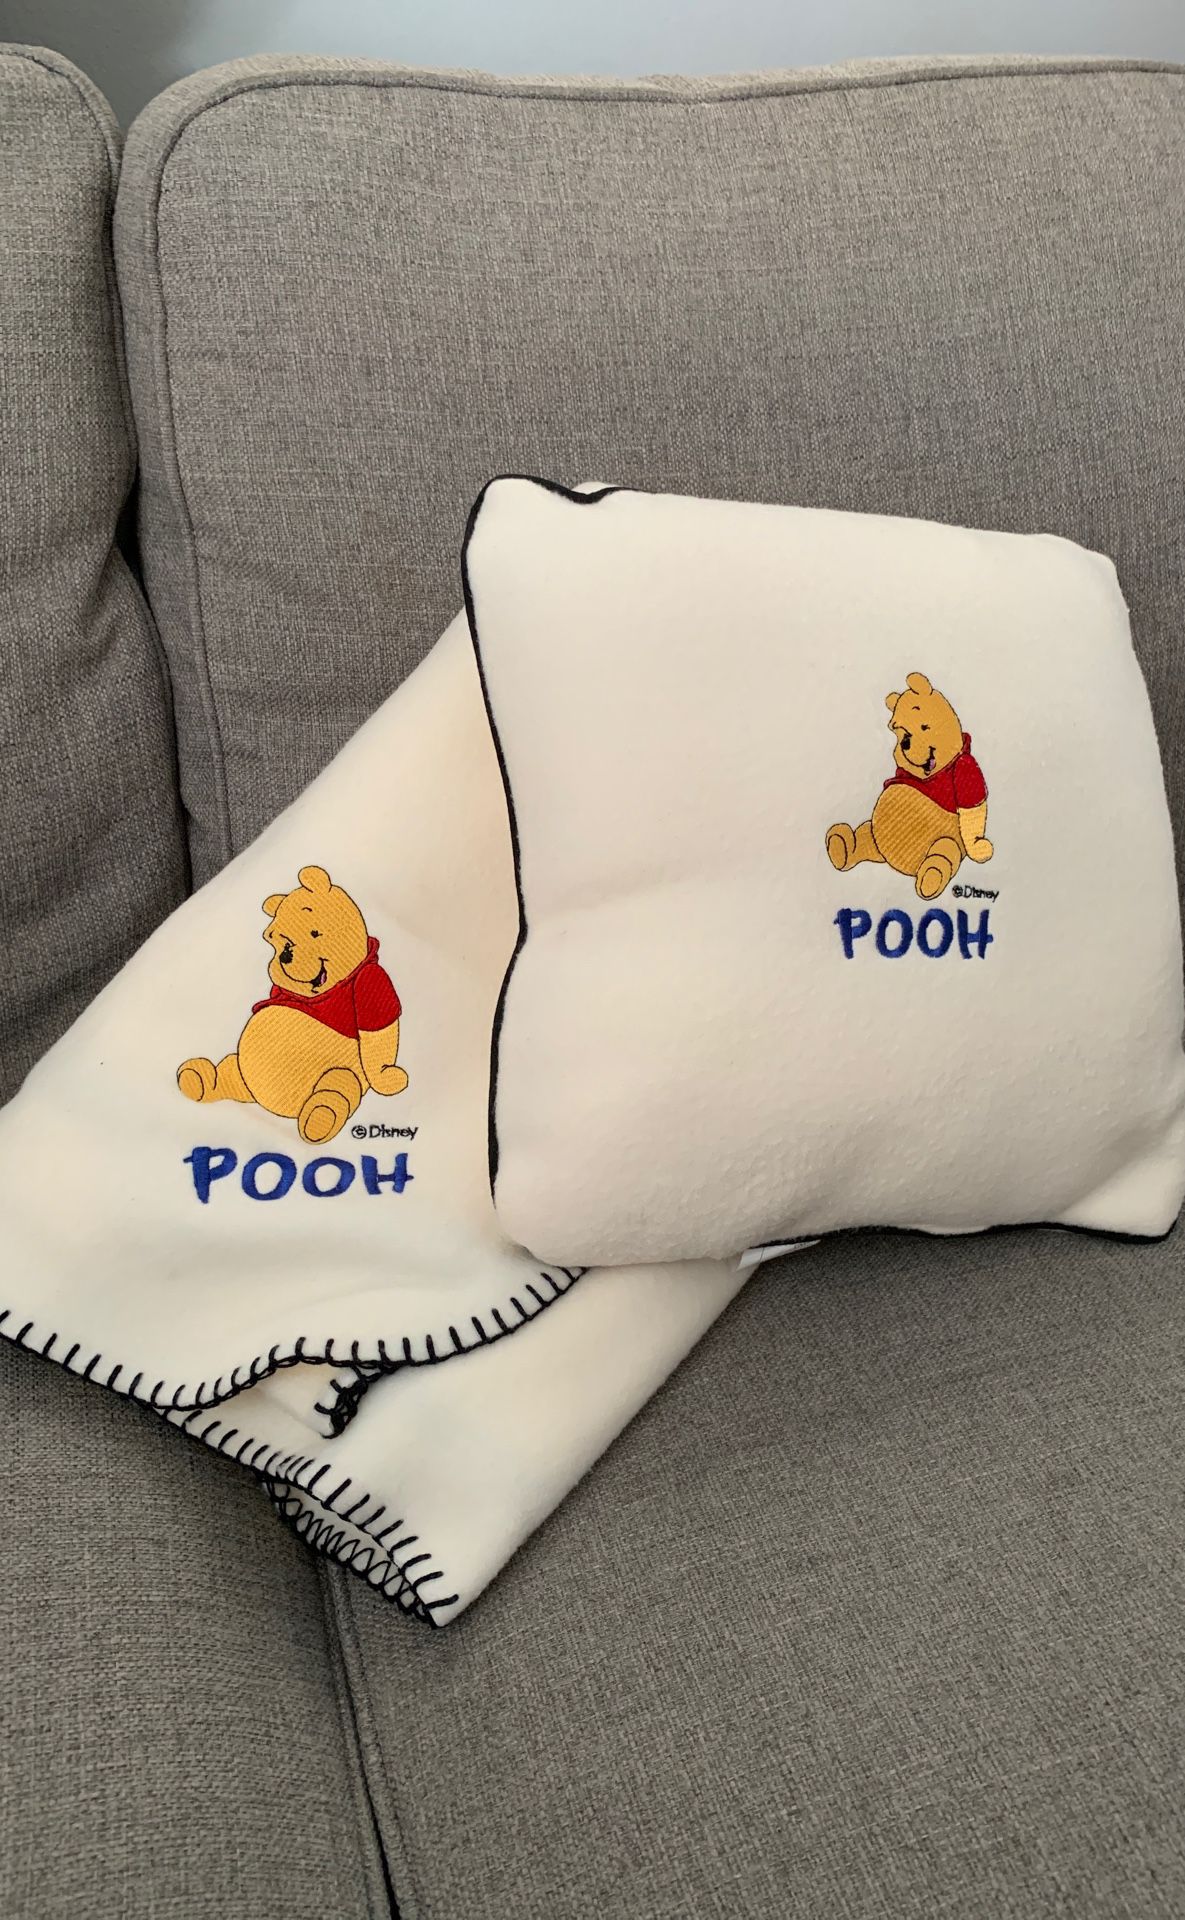 Pooh Throw Blanket & Pillow